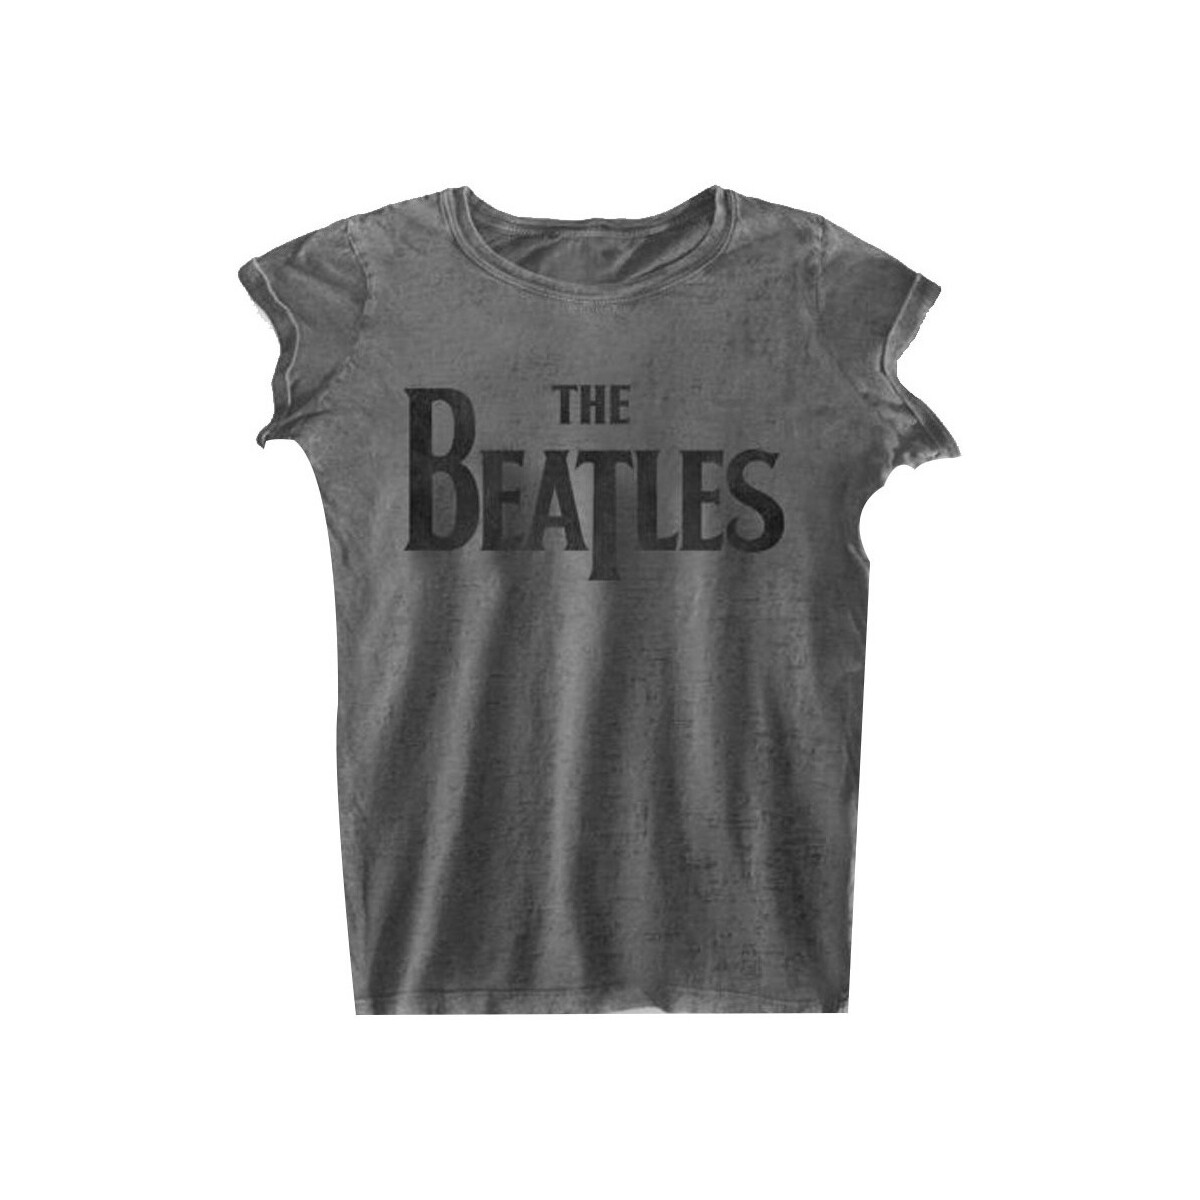 Vêtements Femme T-shirts manches longues The Beatles RO610 Gris